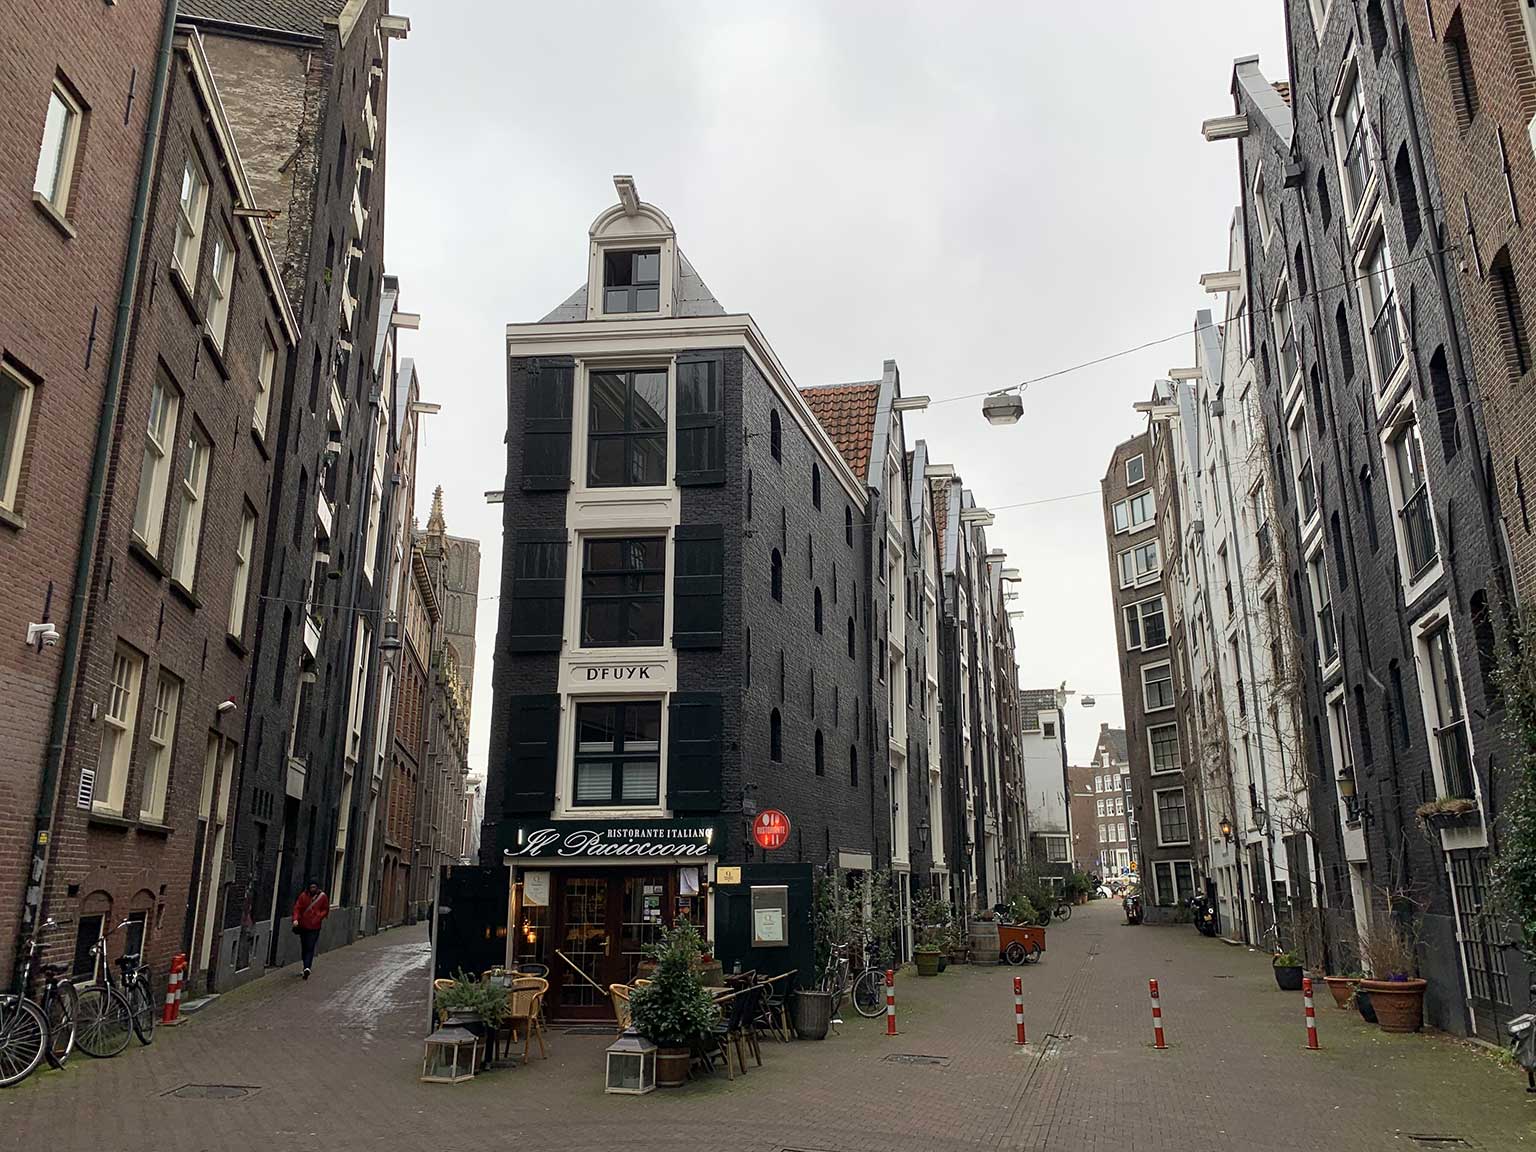 Koggestraat en Teerketelsteeg, Amsterdam